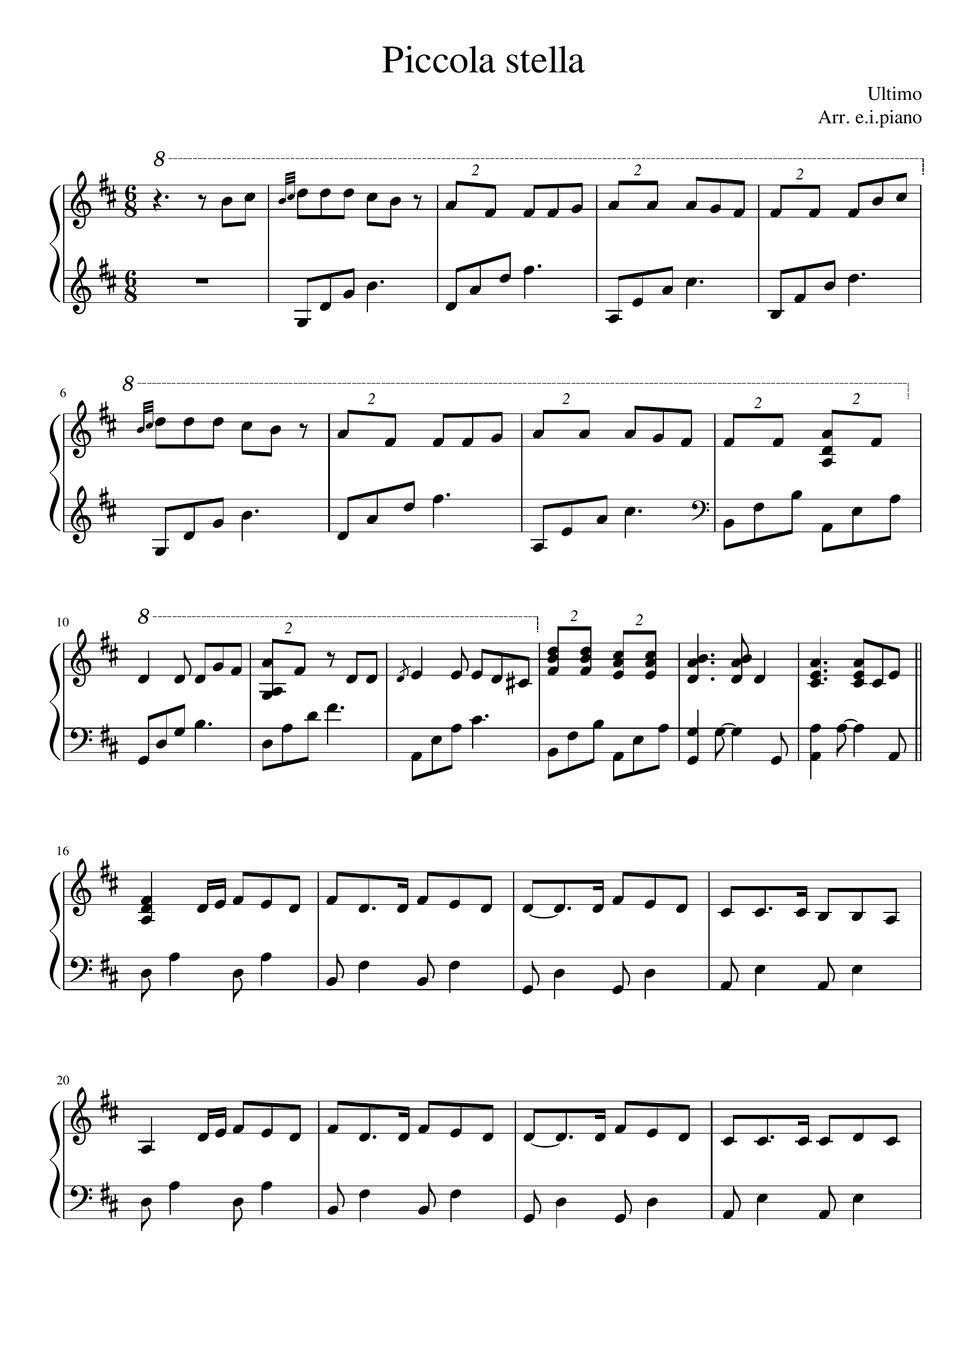 Ultimo - Piccola stella Sheets by e.i.piano